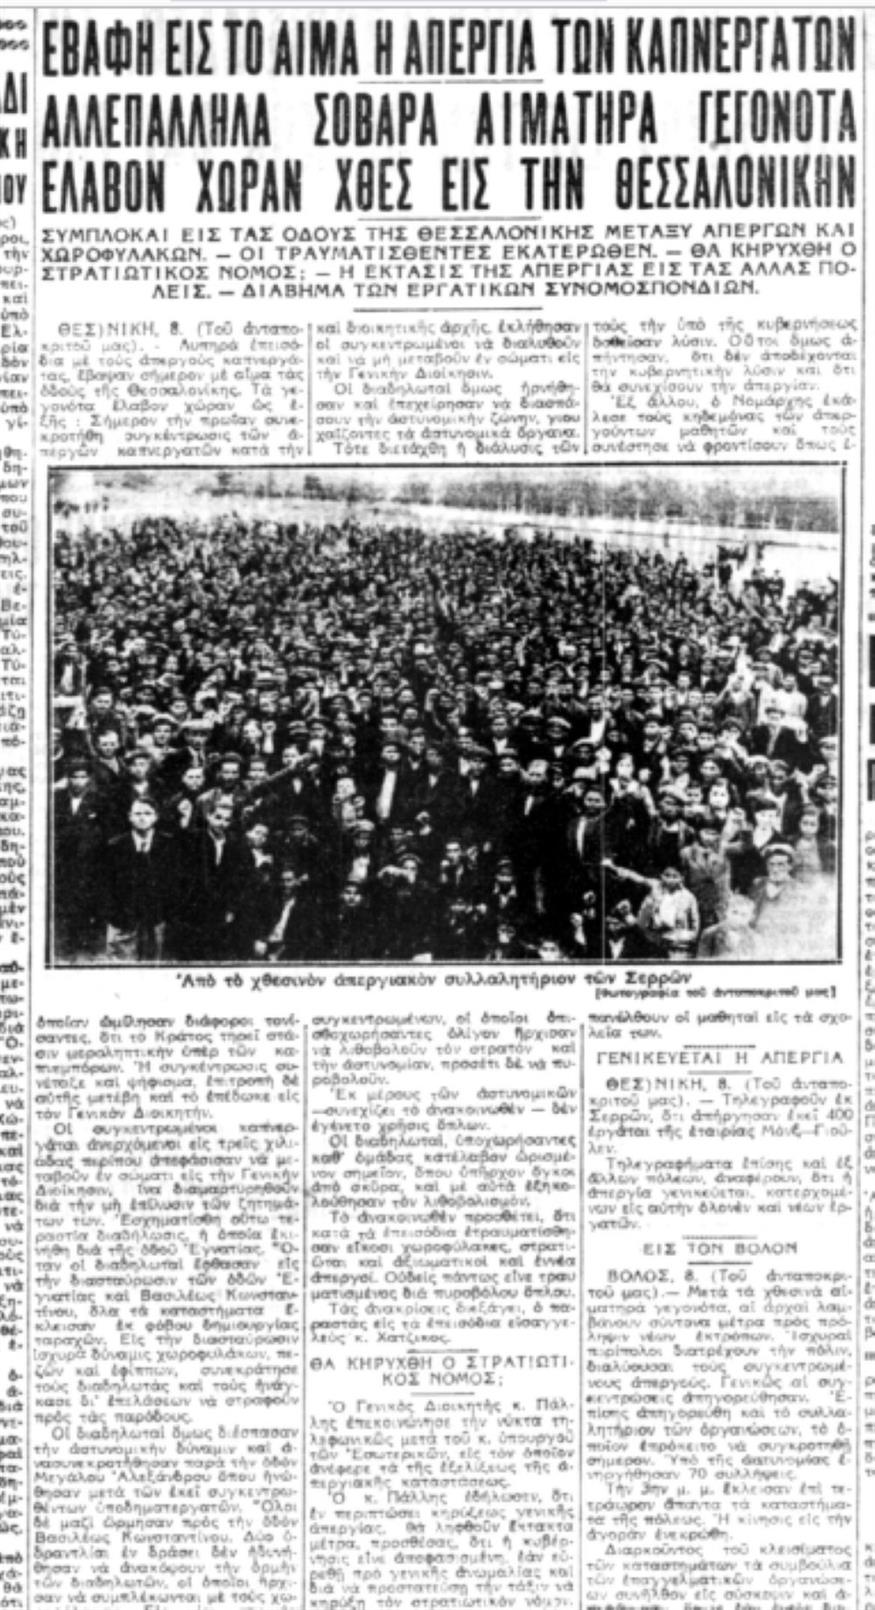 Δημοσίευμα της Ακρόπολης το Σάββατο 9 Μαΐου 1936 με ρεπορτάζ από τα πρώτα επεισόδια της 8ης Μαΐου στους δρόμους της Θεσσαλονίκης και τις κινητοποιήσεις σε όλα τα μεγάλα αστικά κέντρα της χώρας